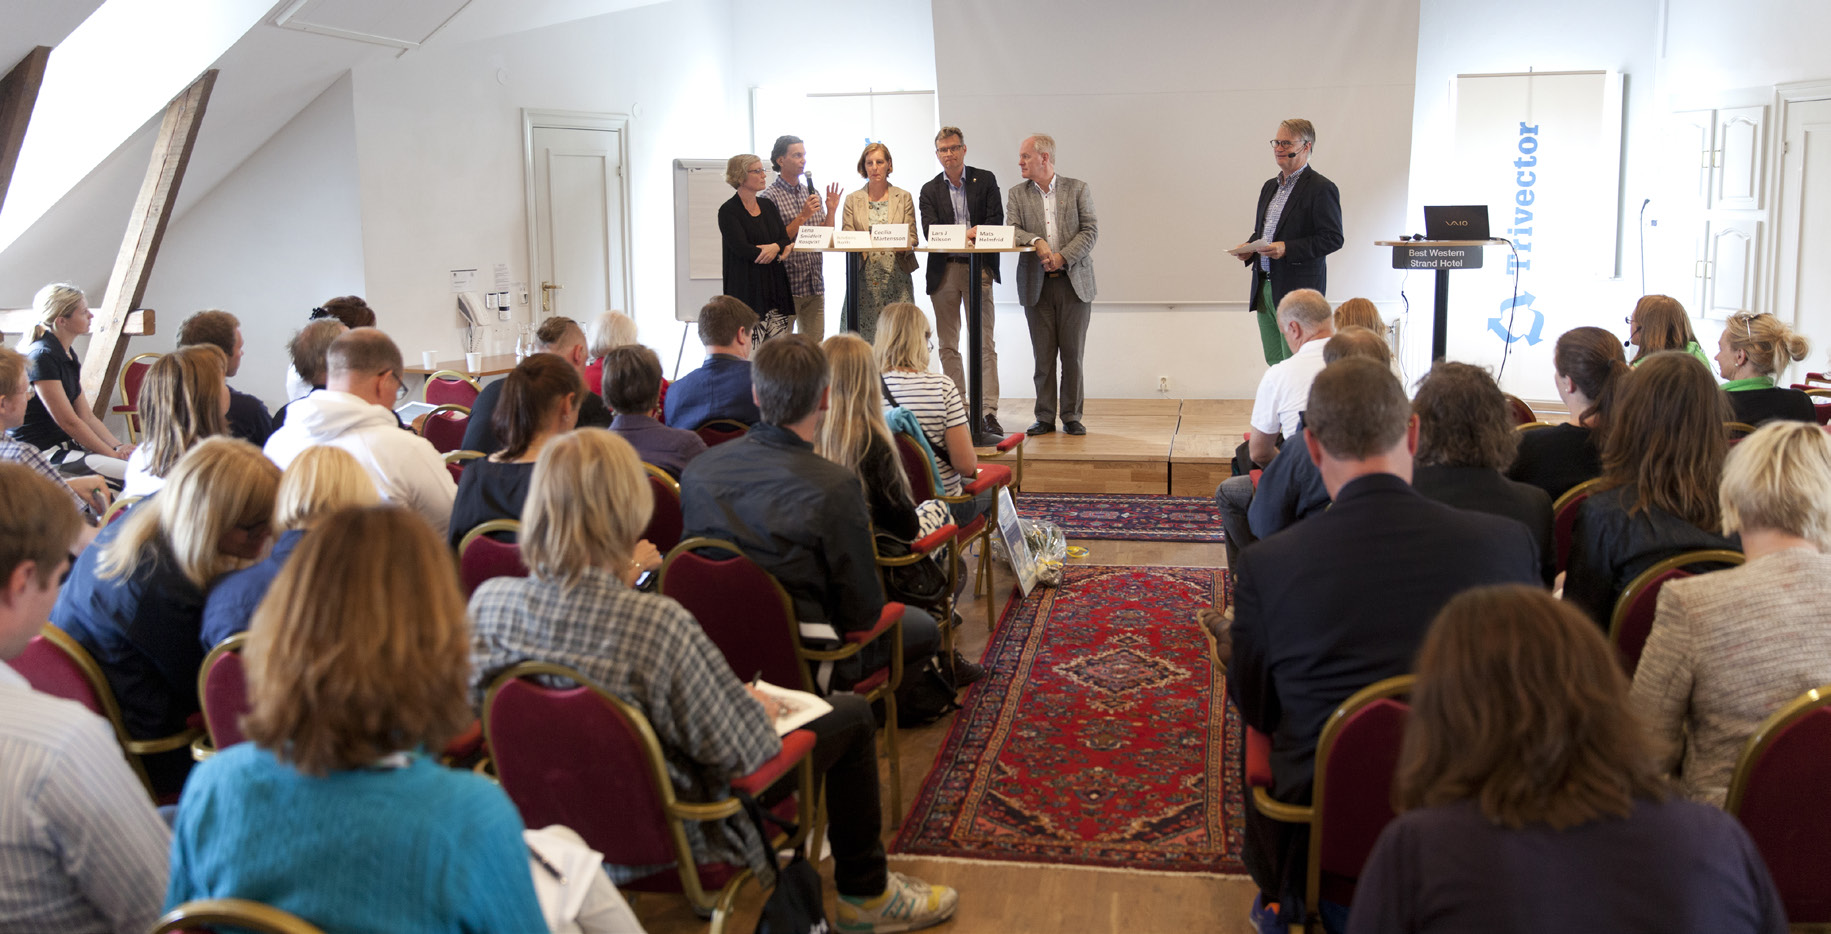 / 7:19 / Hållbarhetsredovisning 2015 sor etc som andra verksamheter arrangerar. Under 2014 och 2015 deltog Trivector med 5 seminarier i Visby under Almedalsveckan.